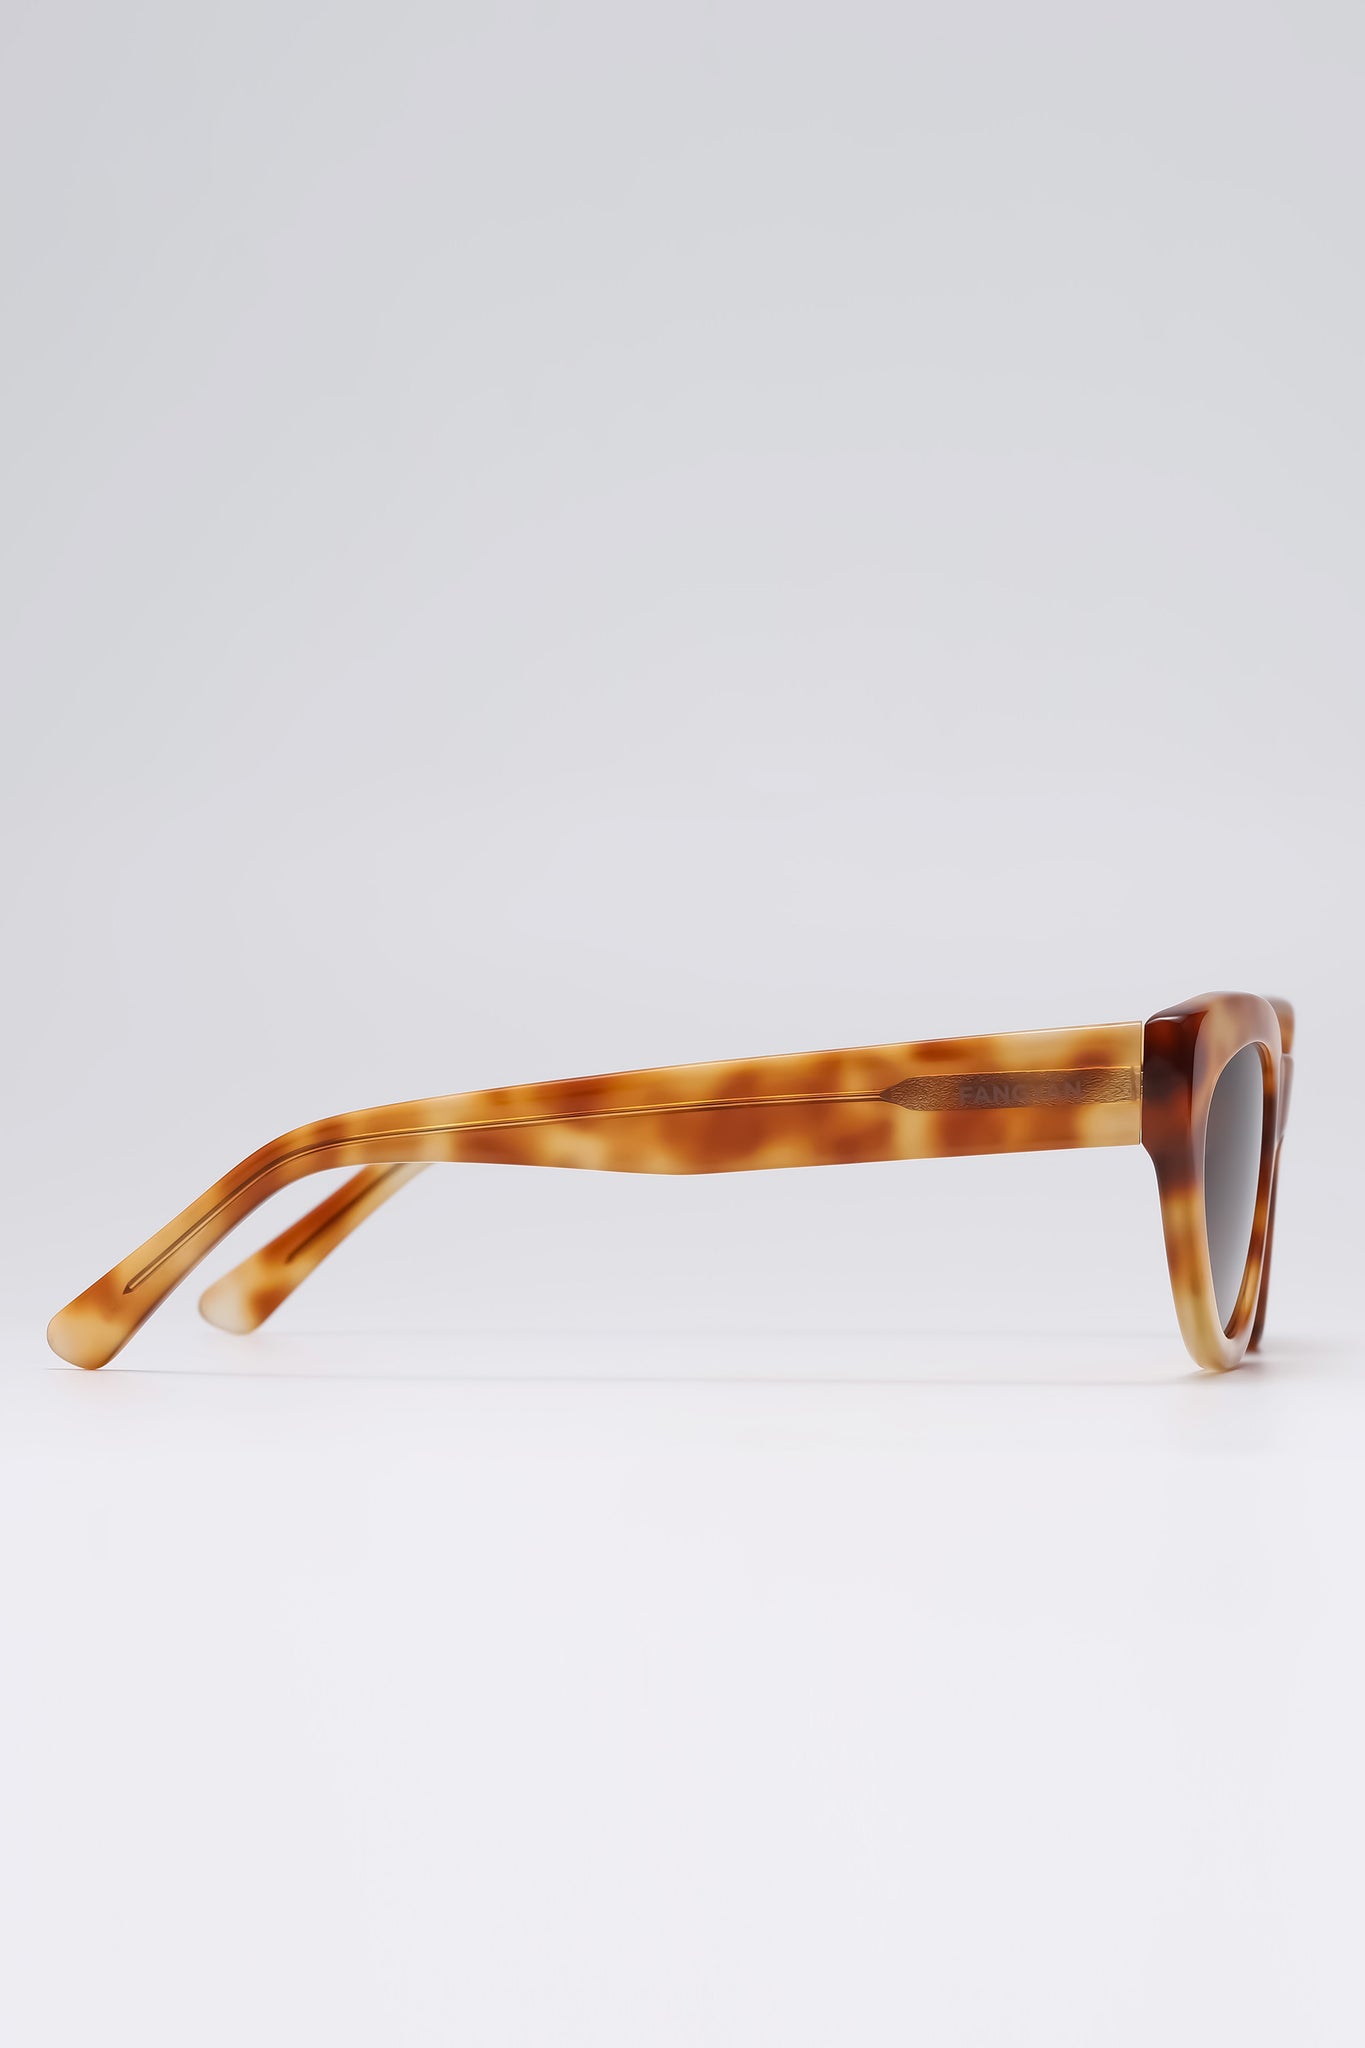 Fangyan | Cat-Eye Tortoiseshell Yellow Sunglasses